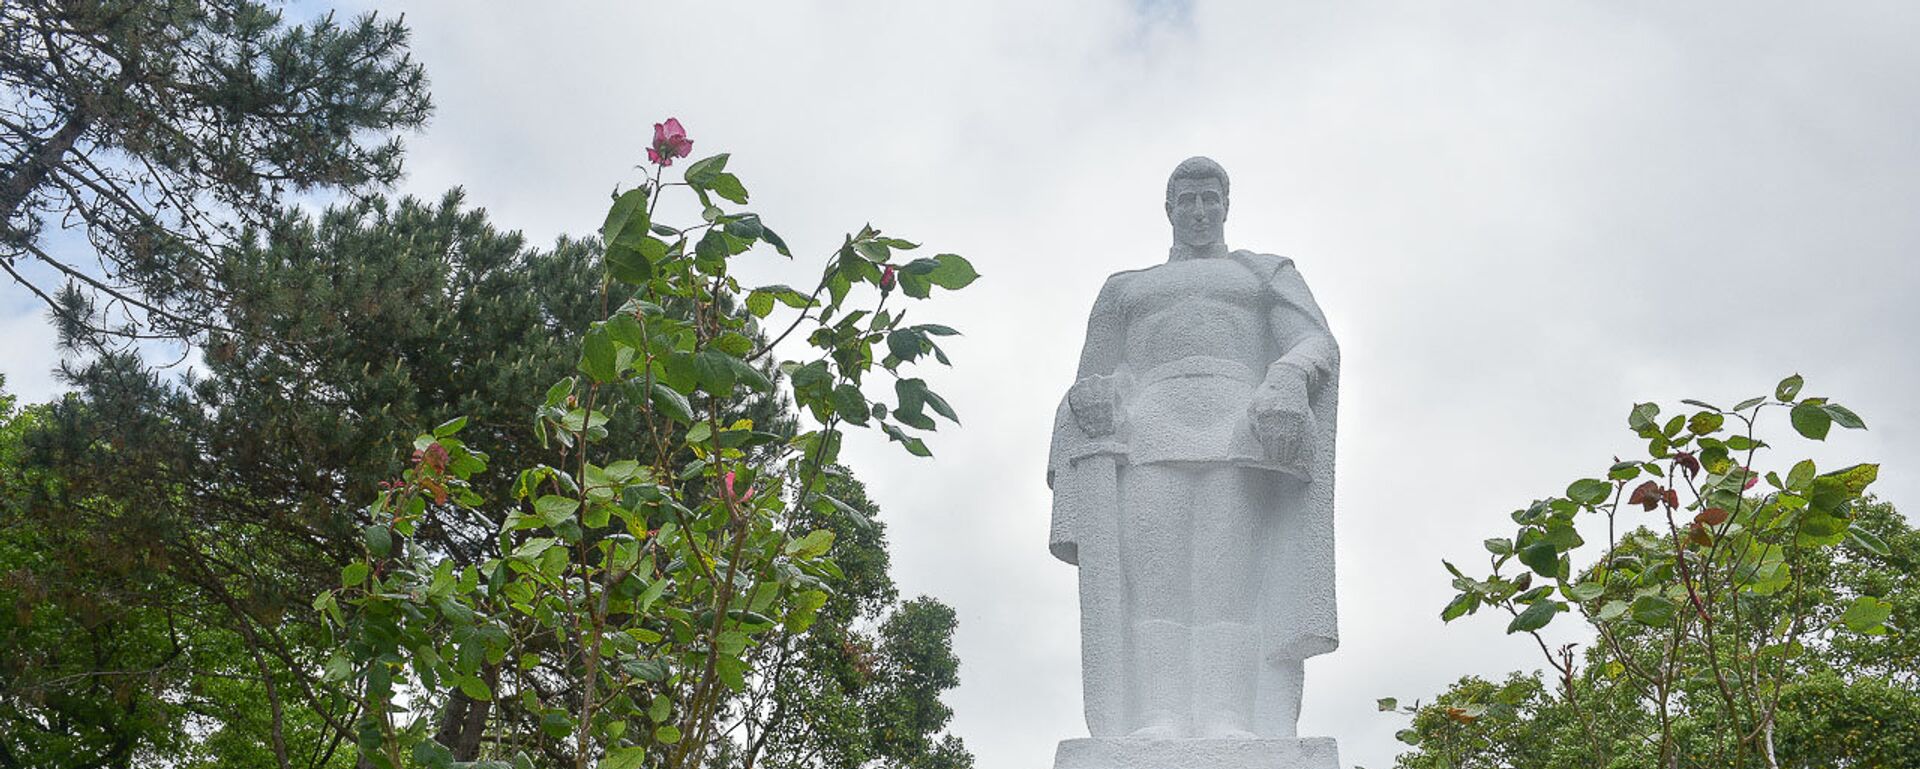 Памятник неизвестному солдату в Сухуме - Sputnik Аҧсны, 1920, 21.04.2021